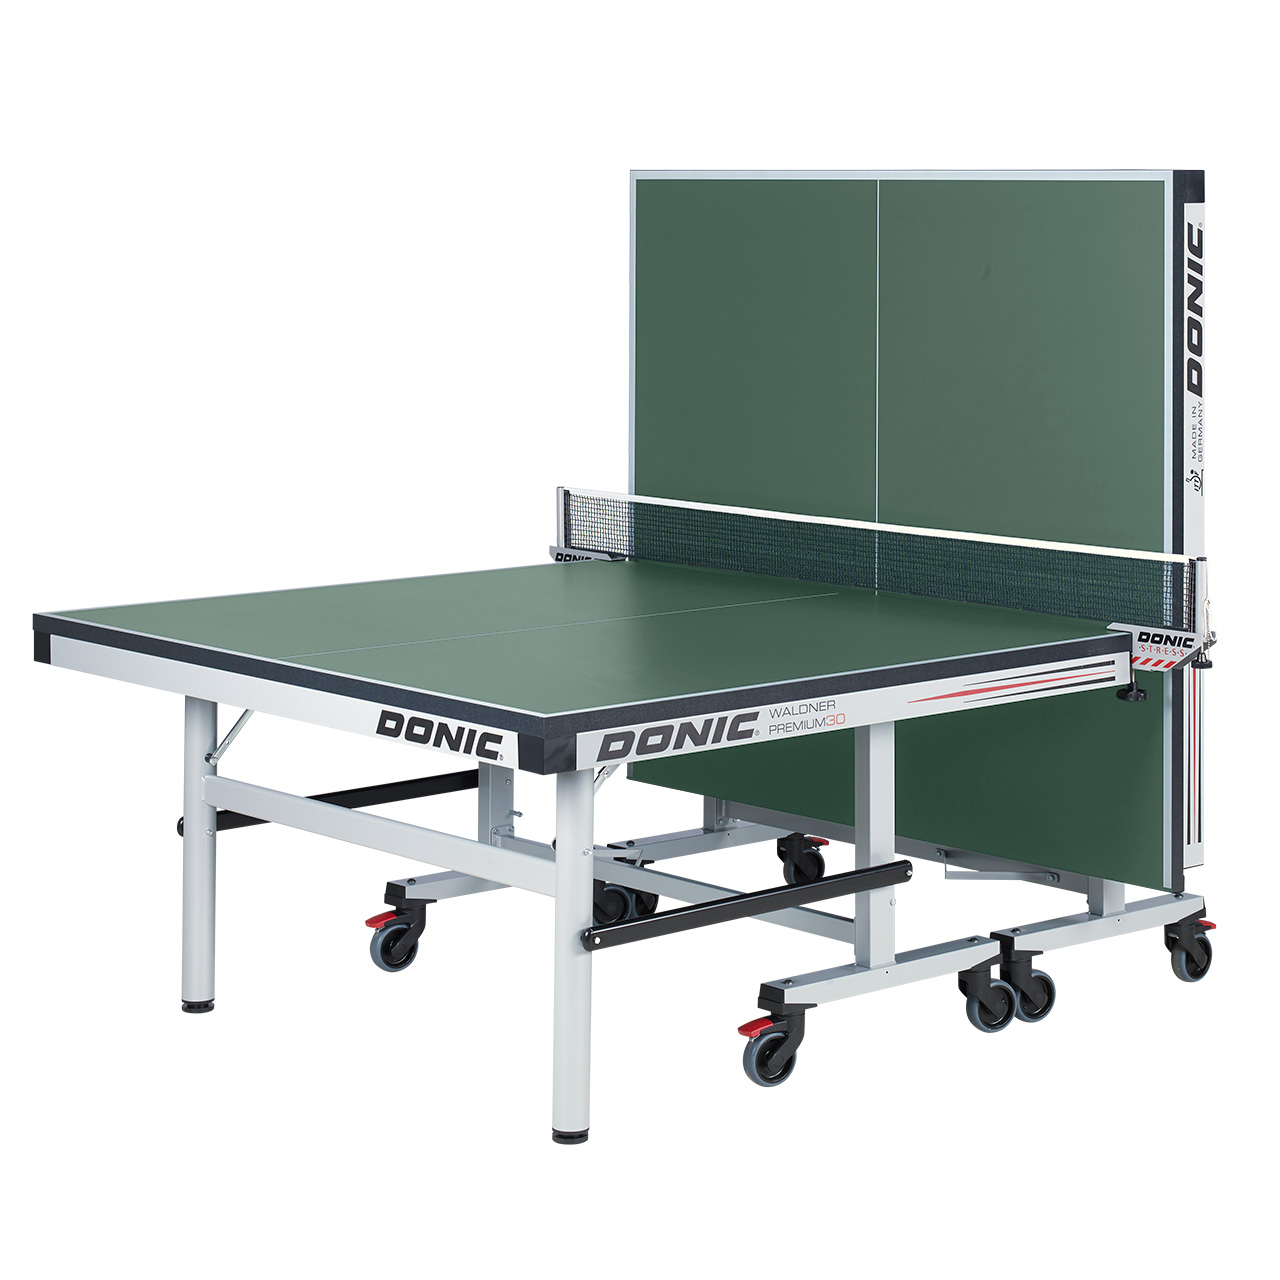 Tischtennis-Tisch DONIC Waldner Premium 30, grün, Single-Player-Position